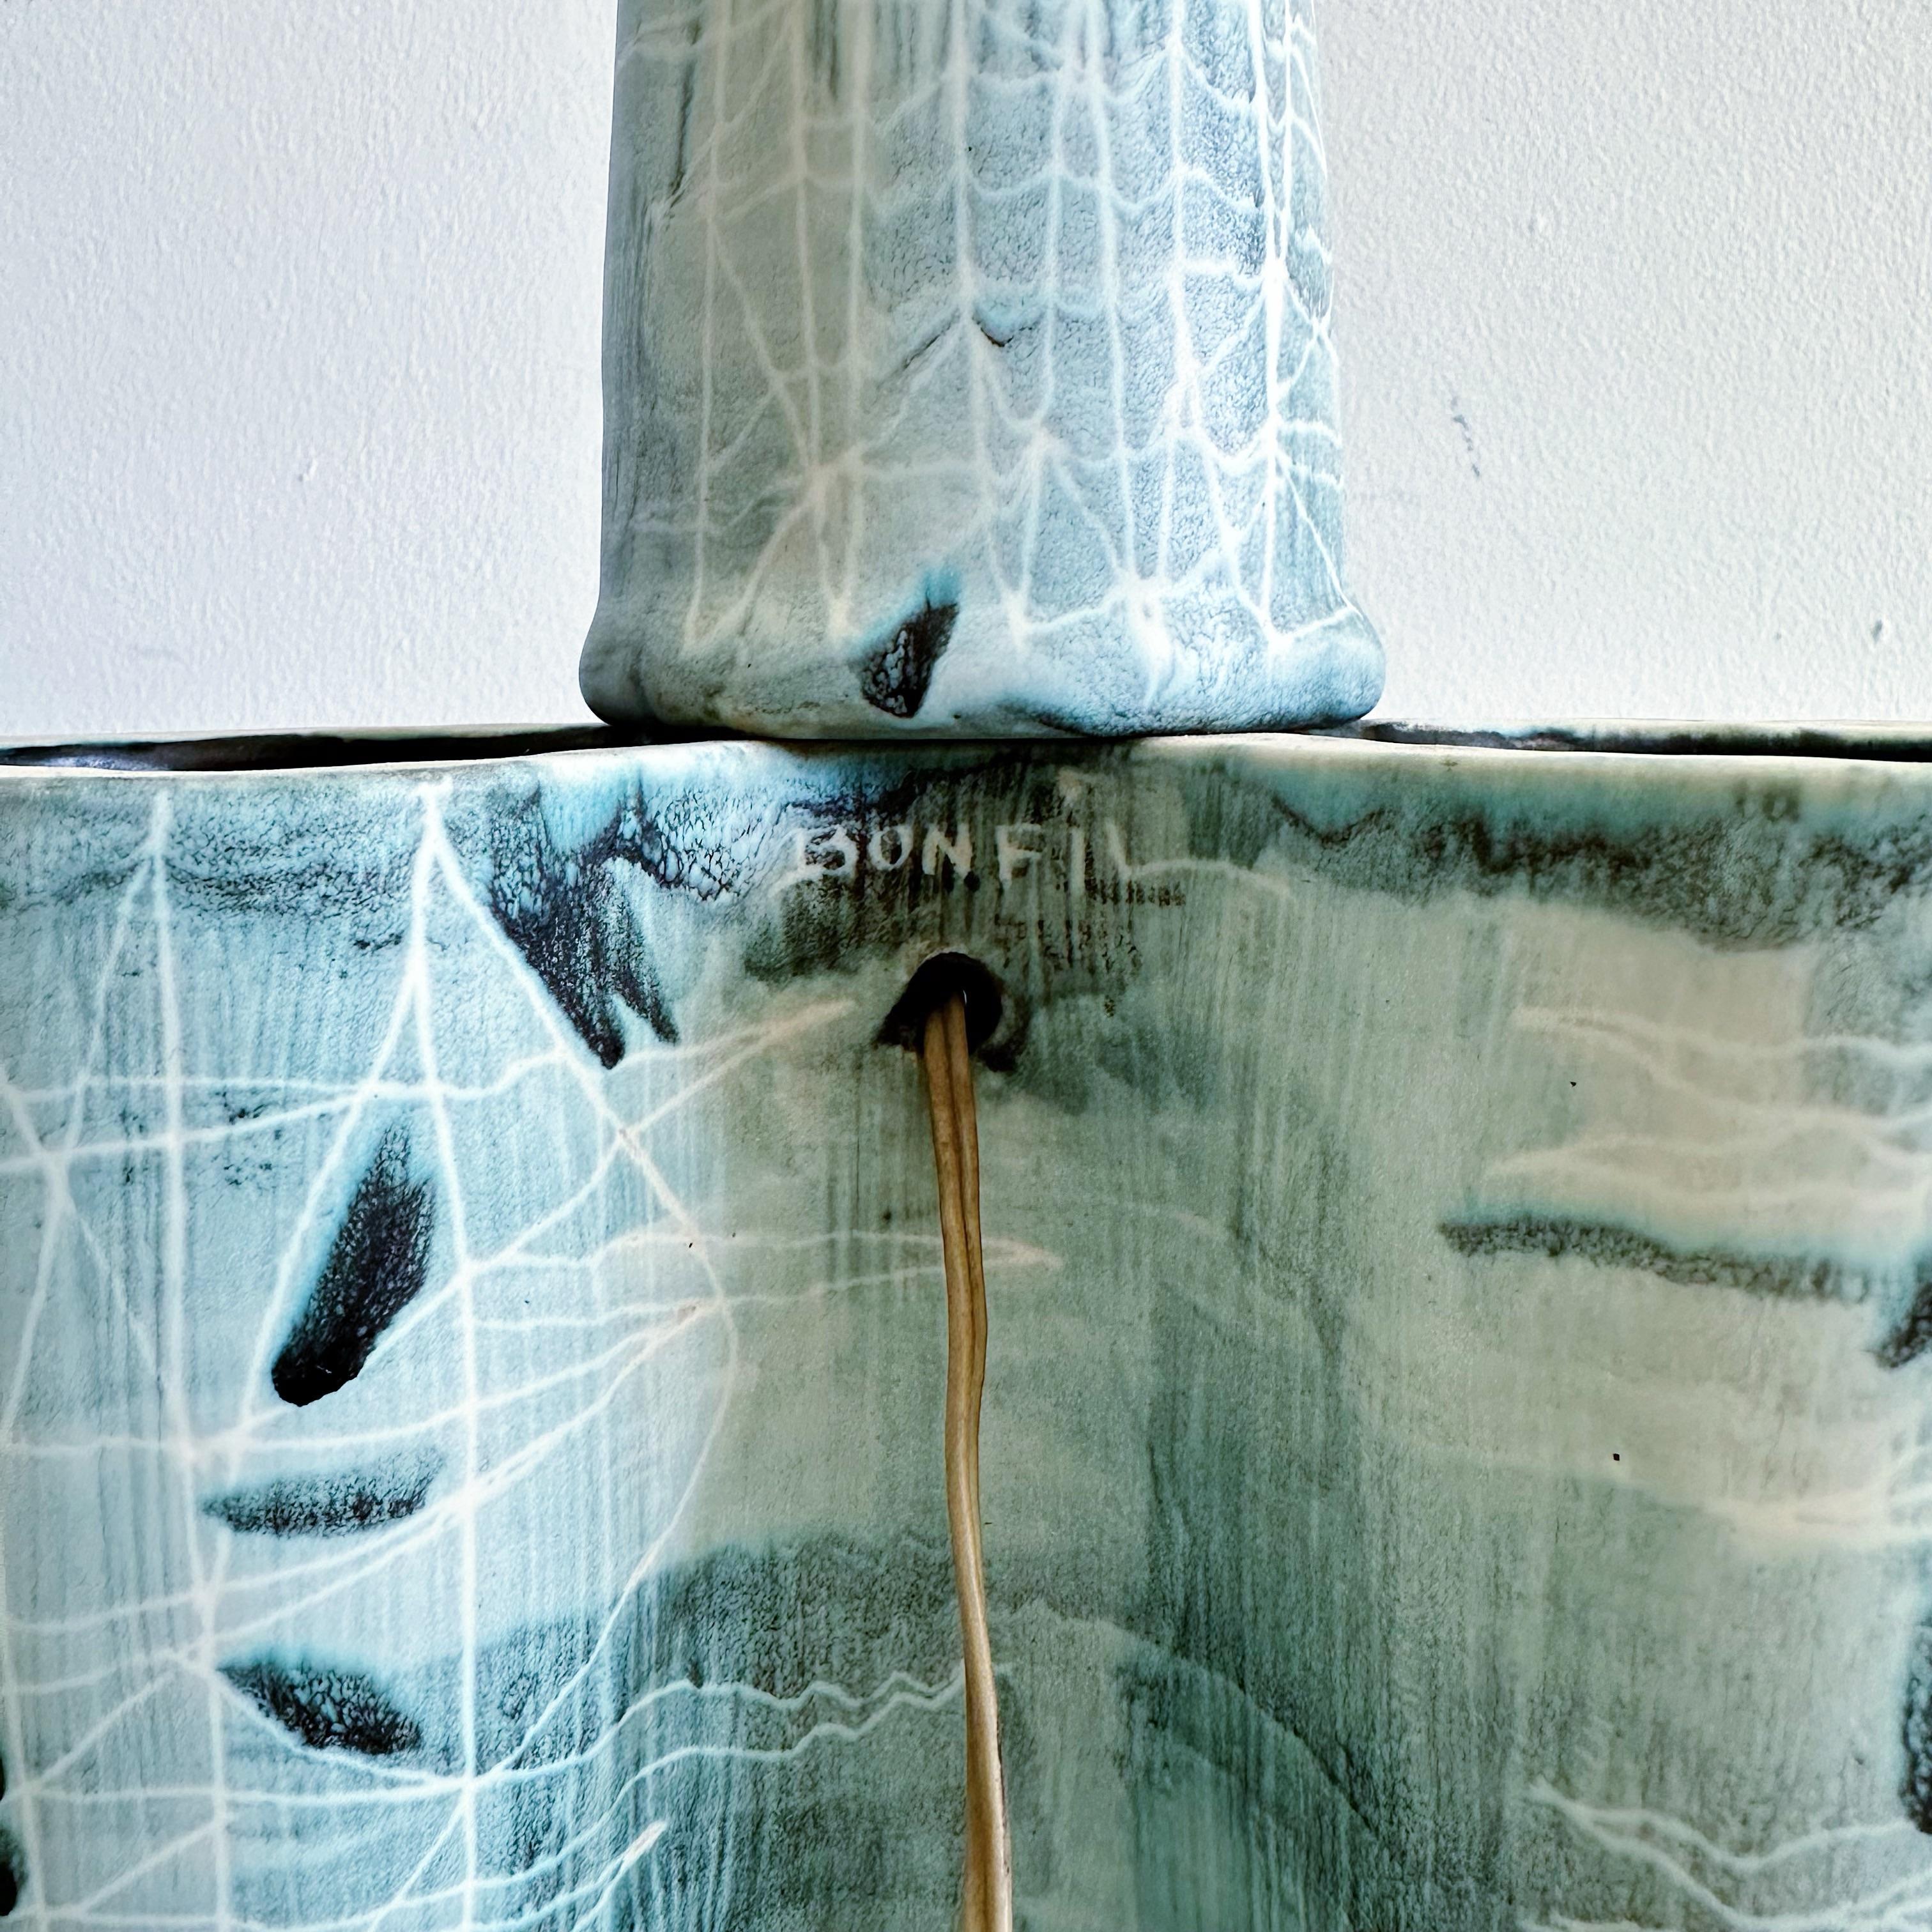 Robert Bonnefille dit Bonfil 2 Stück Keramik Keramiklampe aus Frankreich in den 1960er Jahren. Die Lampe hat Teal und Creme Farbe Glasur. Die Lampe ruht auf 3 konischen Beinen und einem separaten Stiel aus Keramik, der die Fassung hält. Original